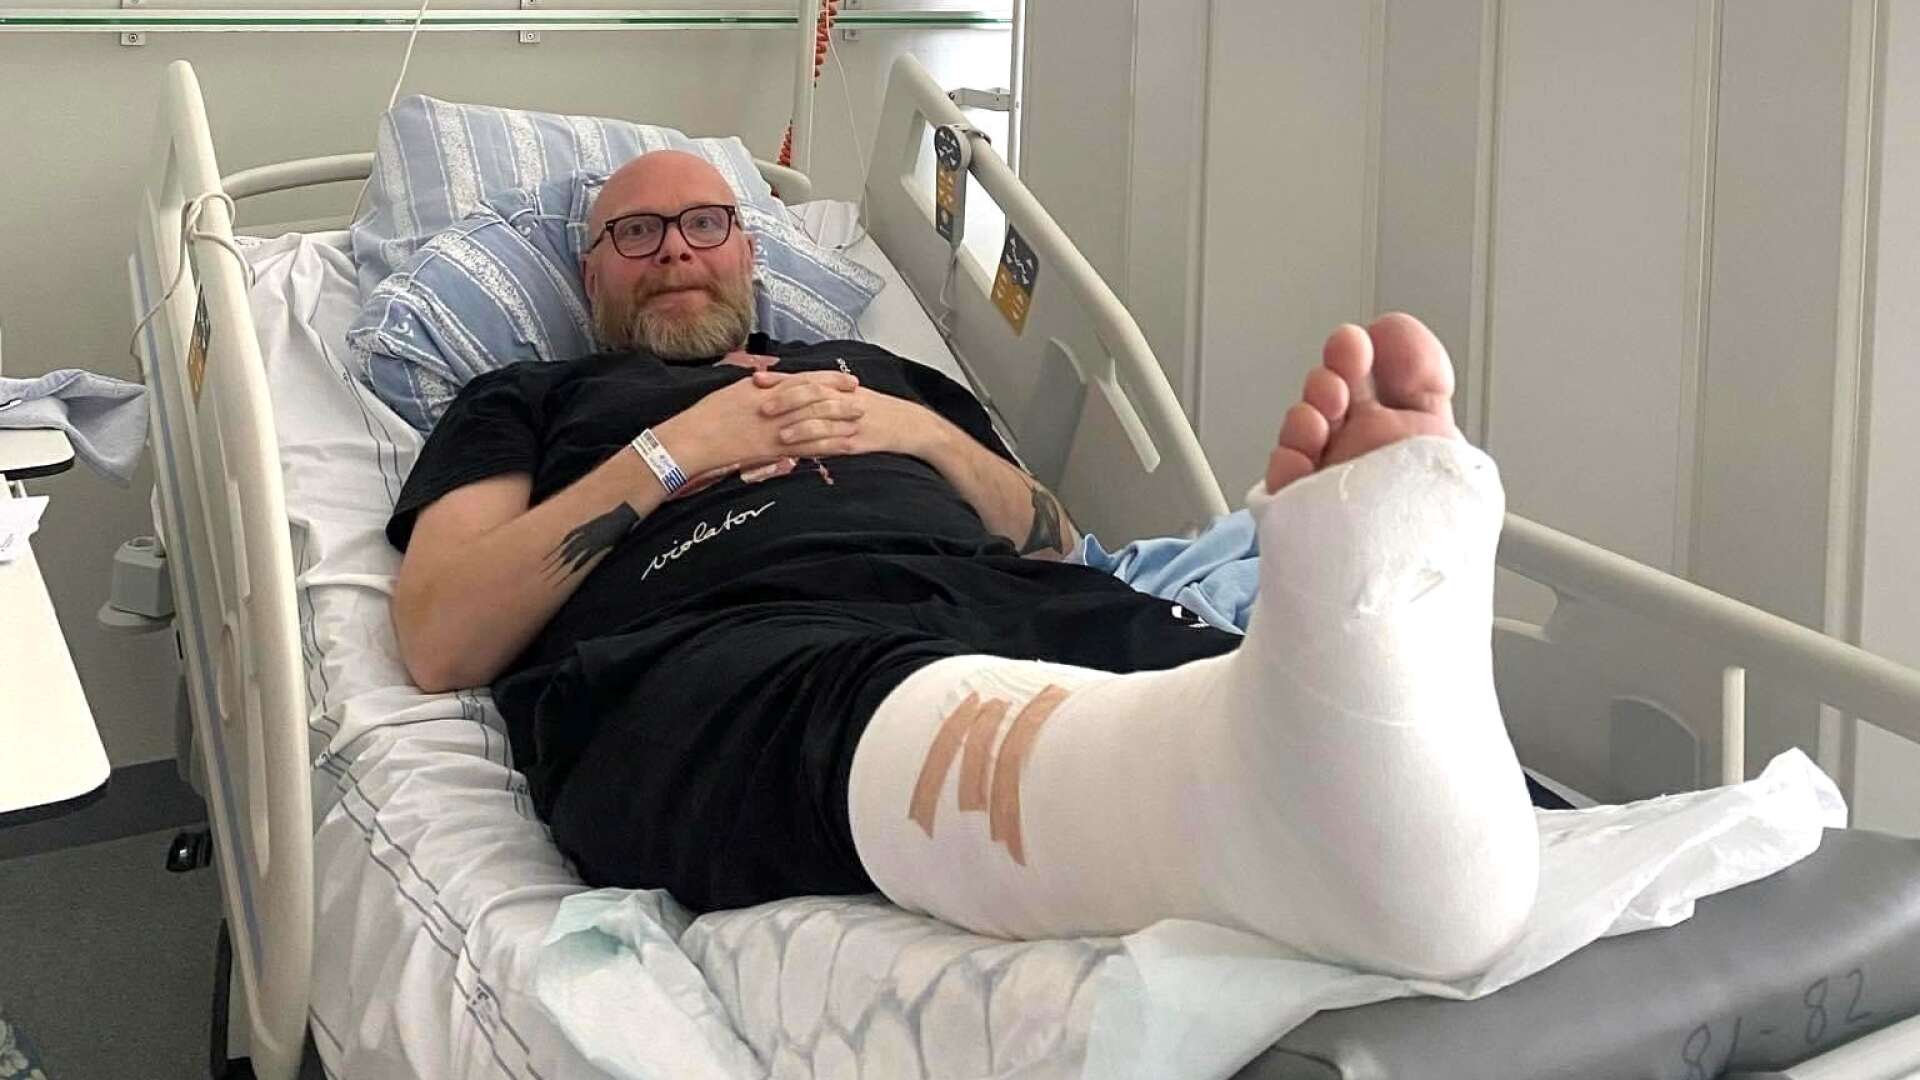 Robin Håkansson, 51, från Järpås, ligger inne på Skas i väntan på operation av sin fot, som han bröt i lördags. Nu beskriver han en frustration över inställda operationer uteblivna läkarbesök. ”Kommunikationen finns inte och vi får inte veta någonting”, säger han. 